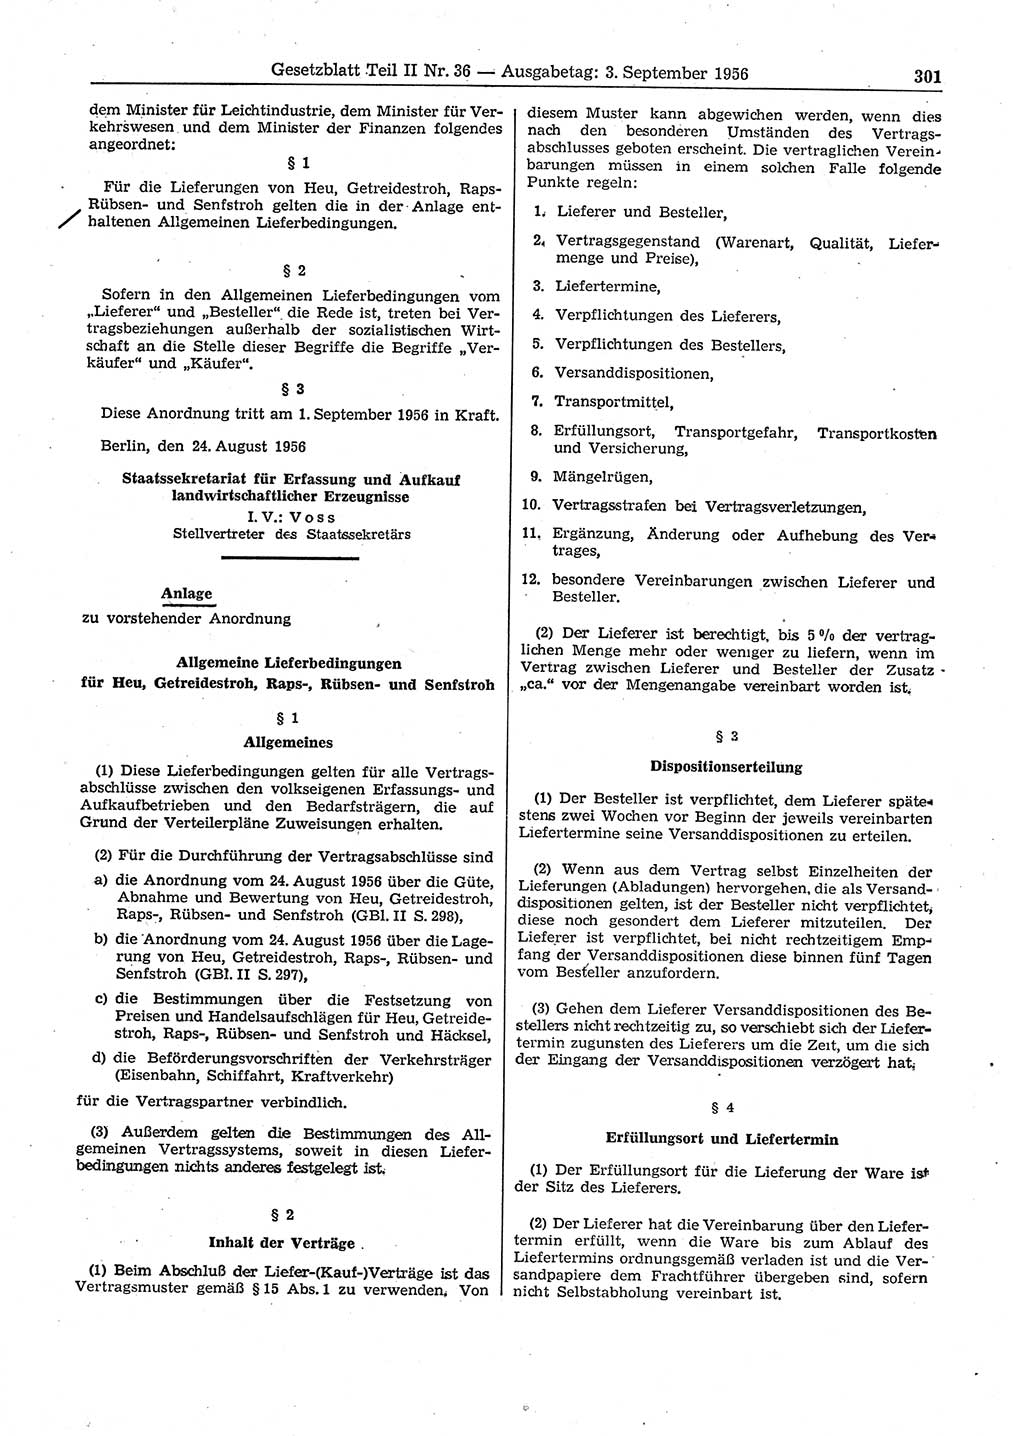 Gesetzblatt (GBl.) der Deutschen Demokratischen Republik (DDR) Teil ⅠⅠ 1956, Seite 301 (GBl. DDR ⅠⅠ 1956, S. 301)